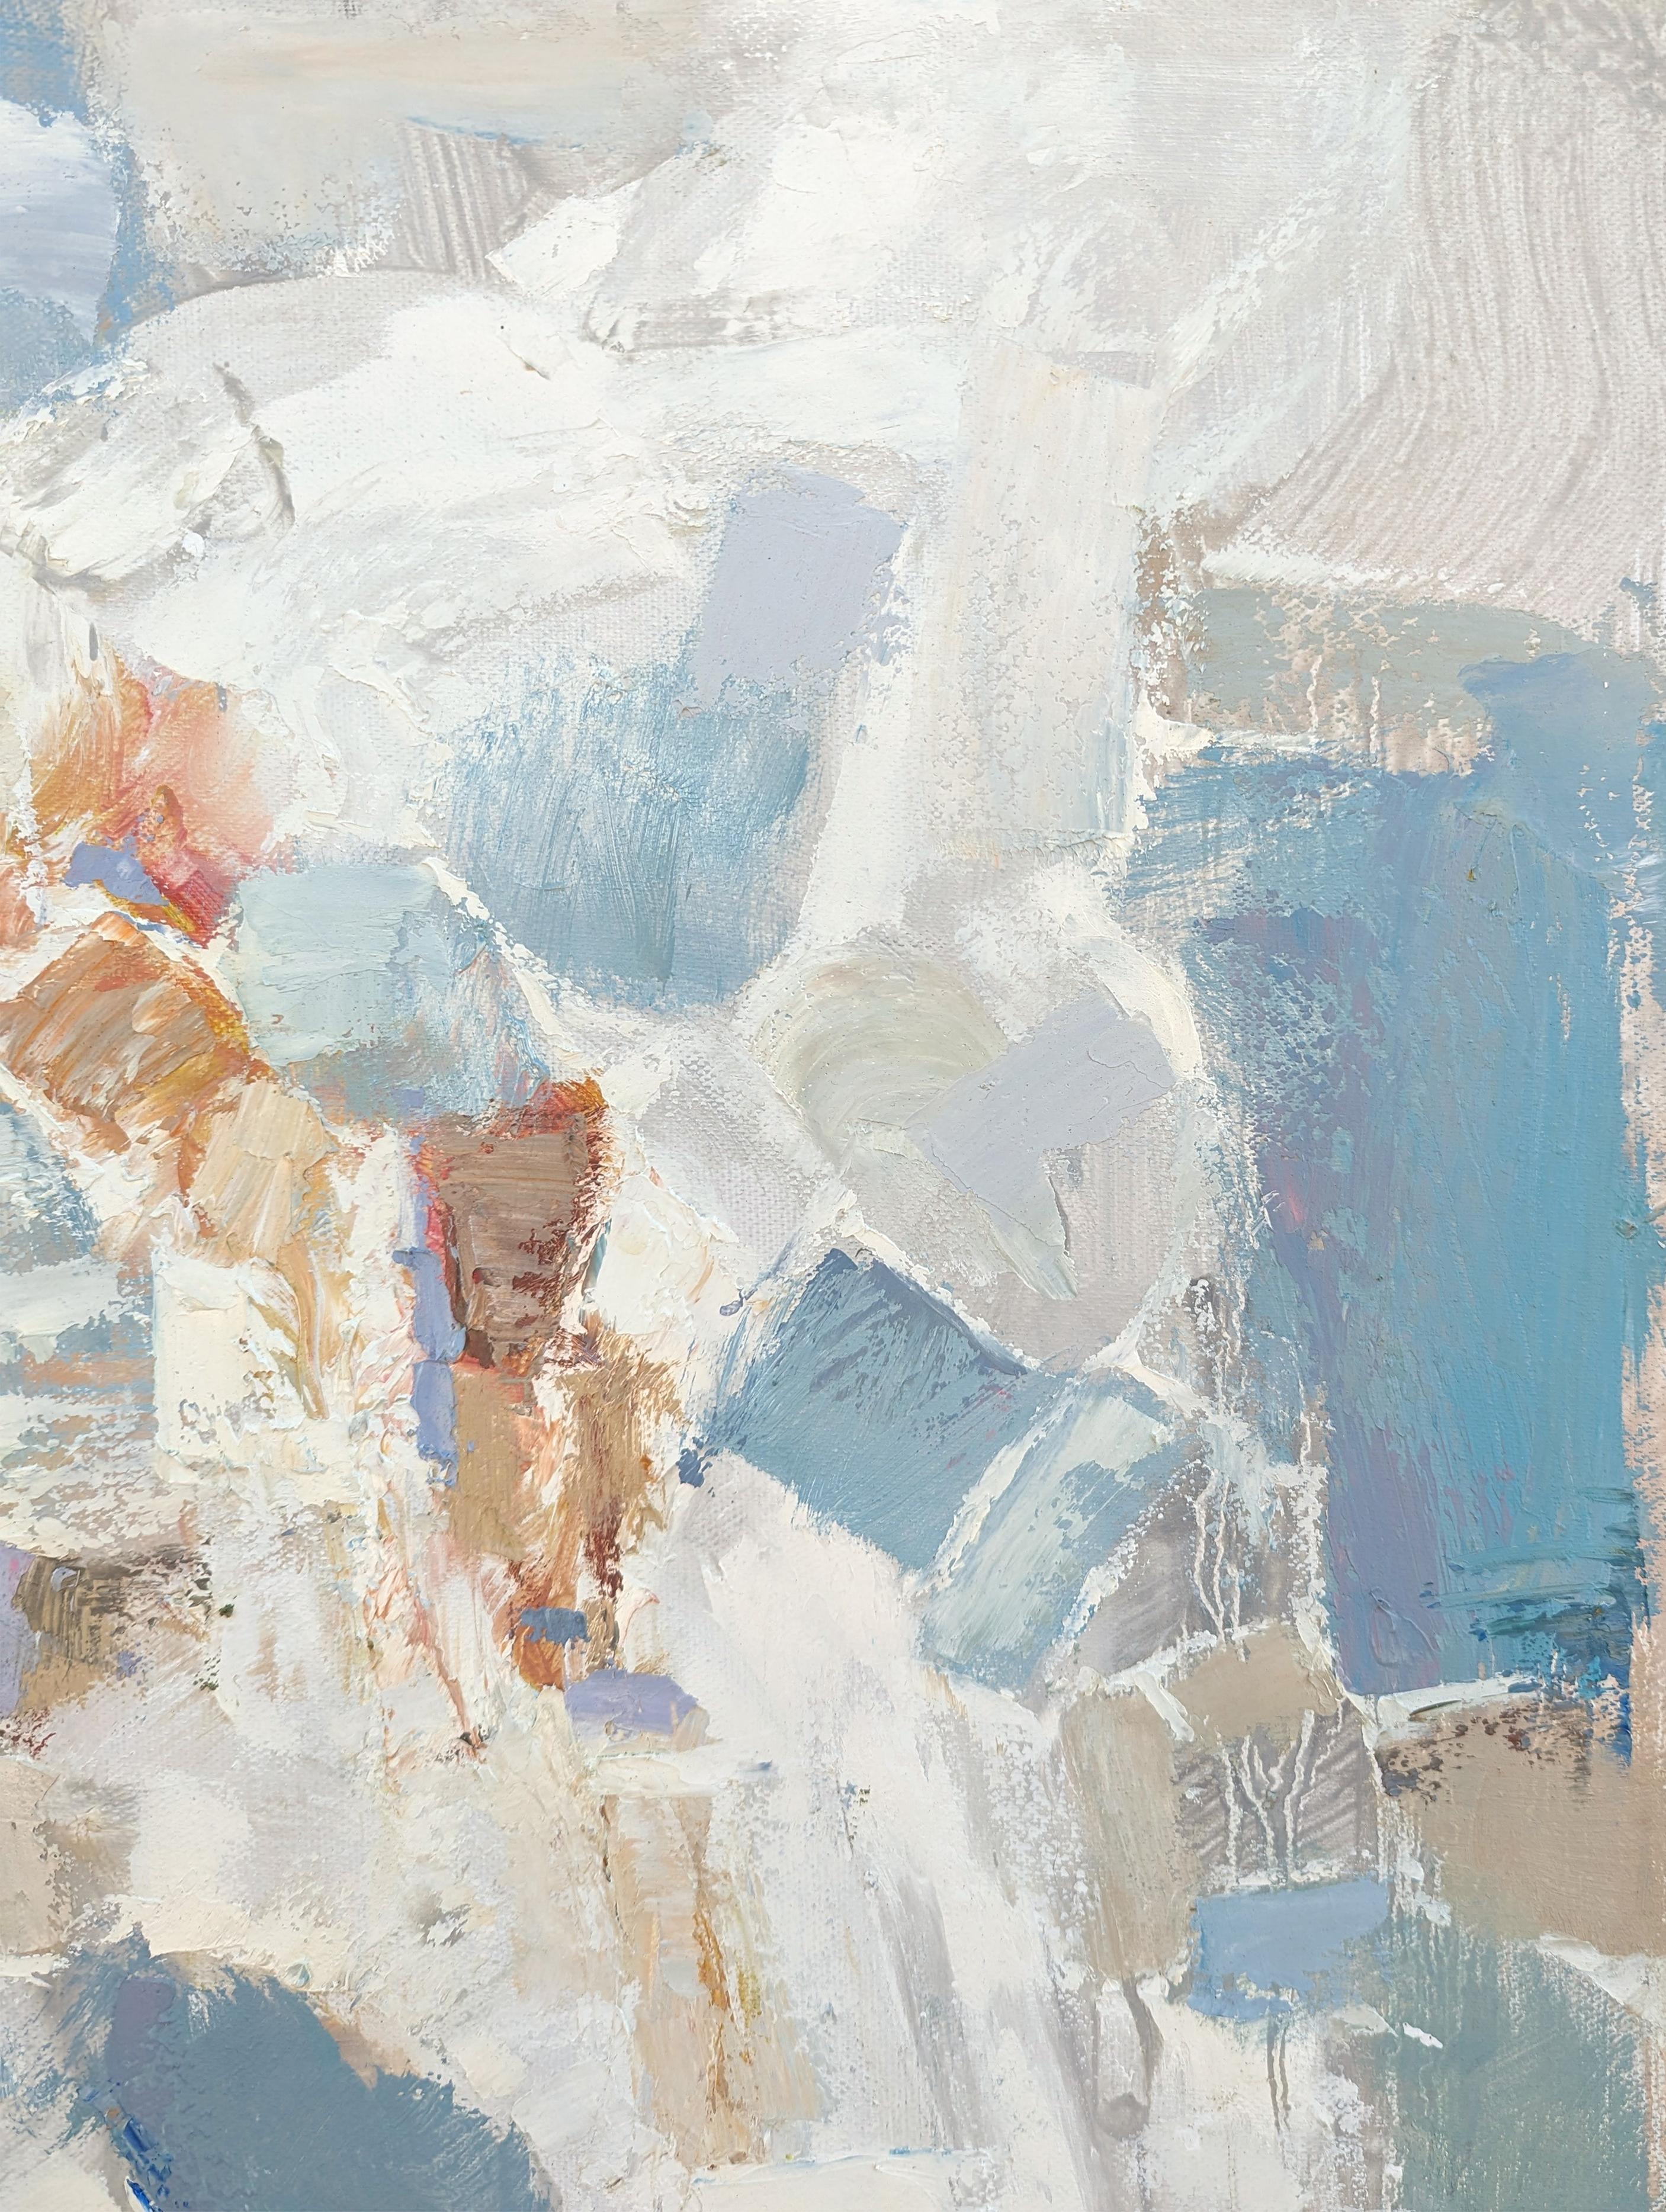 Peinture abstraite aux tons pastel de l'artiste texan Peter Wu. L'œuvre présente des traits gestuels aux tons bleu clair et pêche sur un fond blanc. Signé dans le coin inférieur droit au recto ainsi que titré, signé et daté par l'artiste au verso.